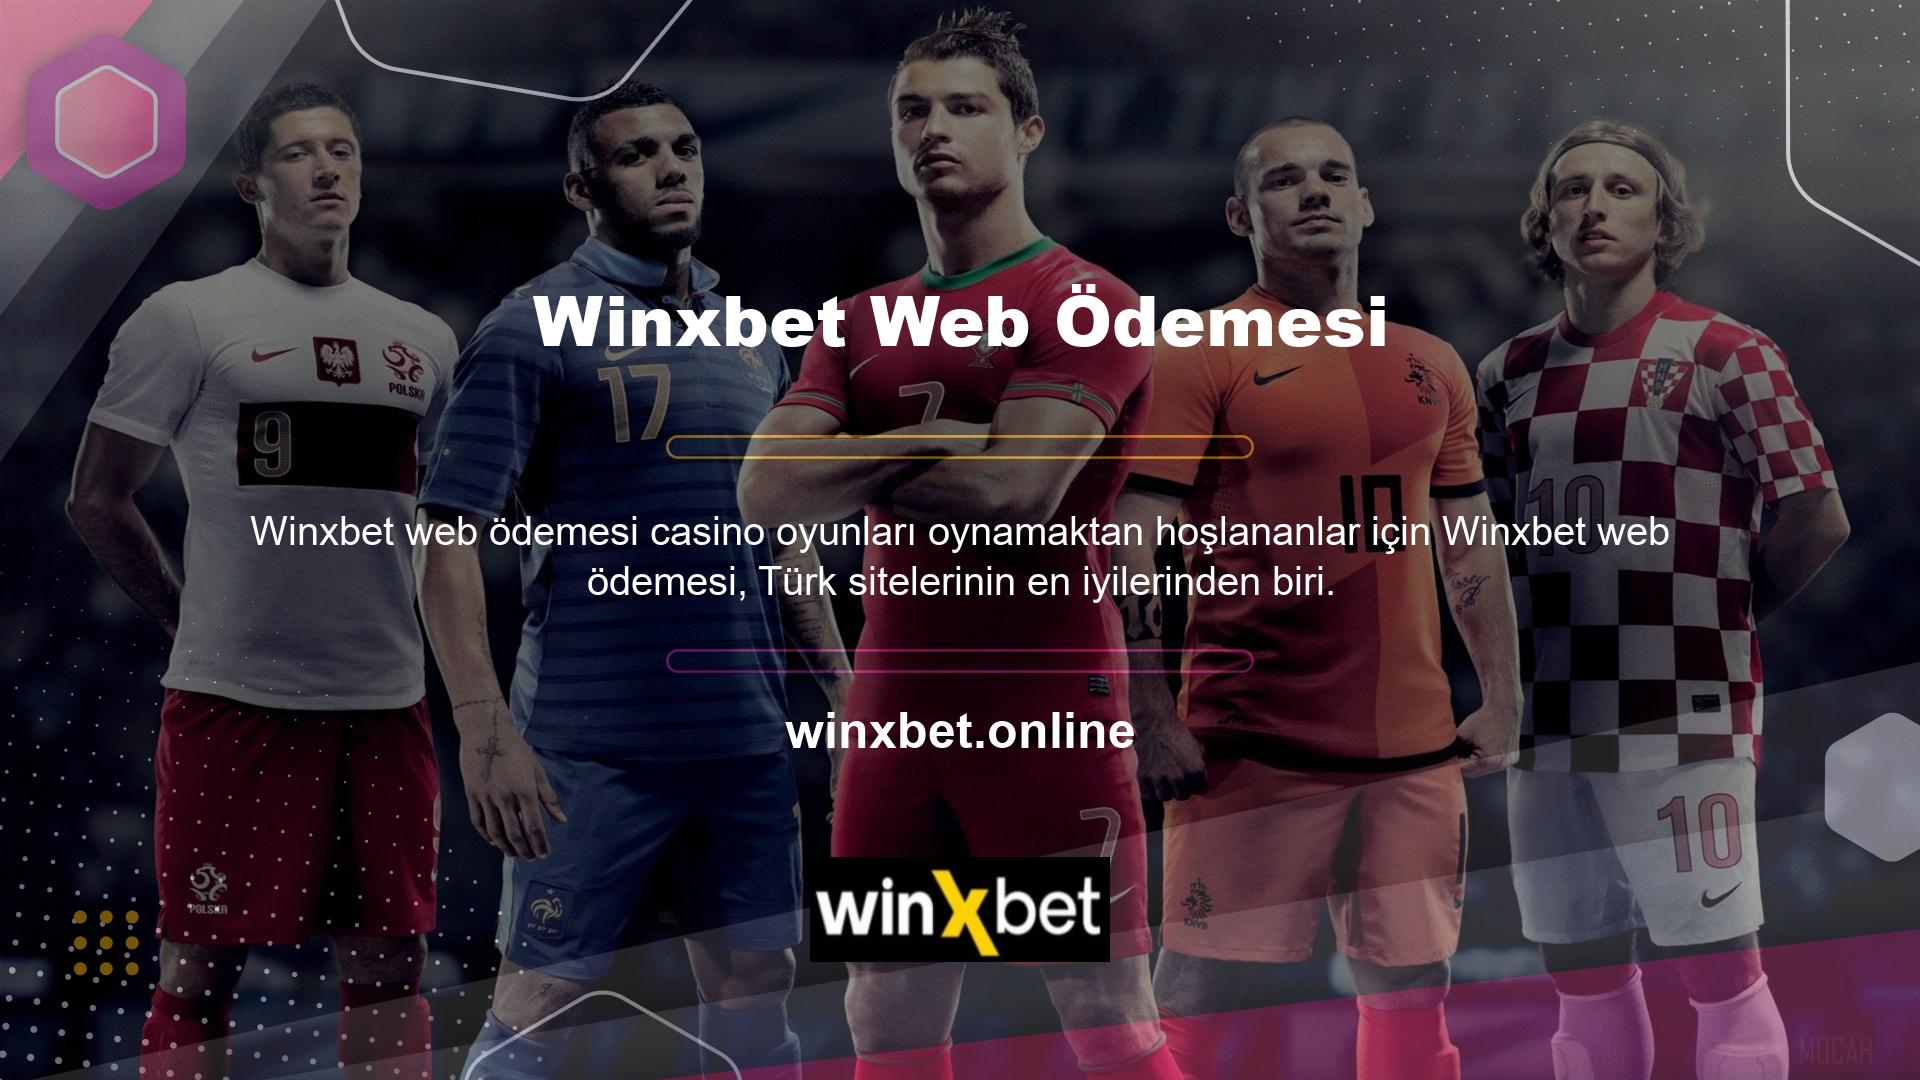 Winxbet web sitesinin genellikle casino oyunları oynarken yalnızca bir kez kullanılması tavsiye edilir